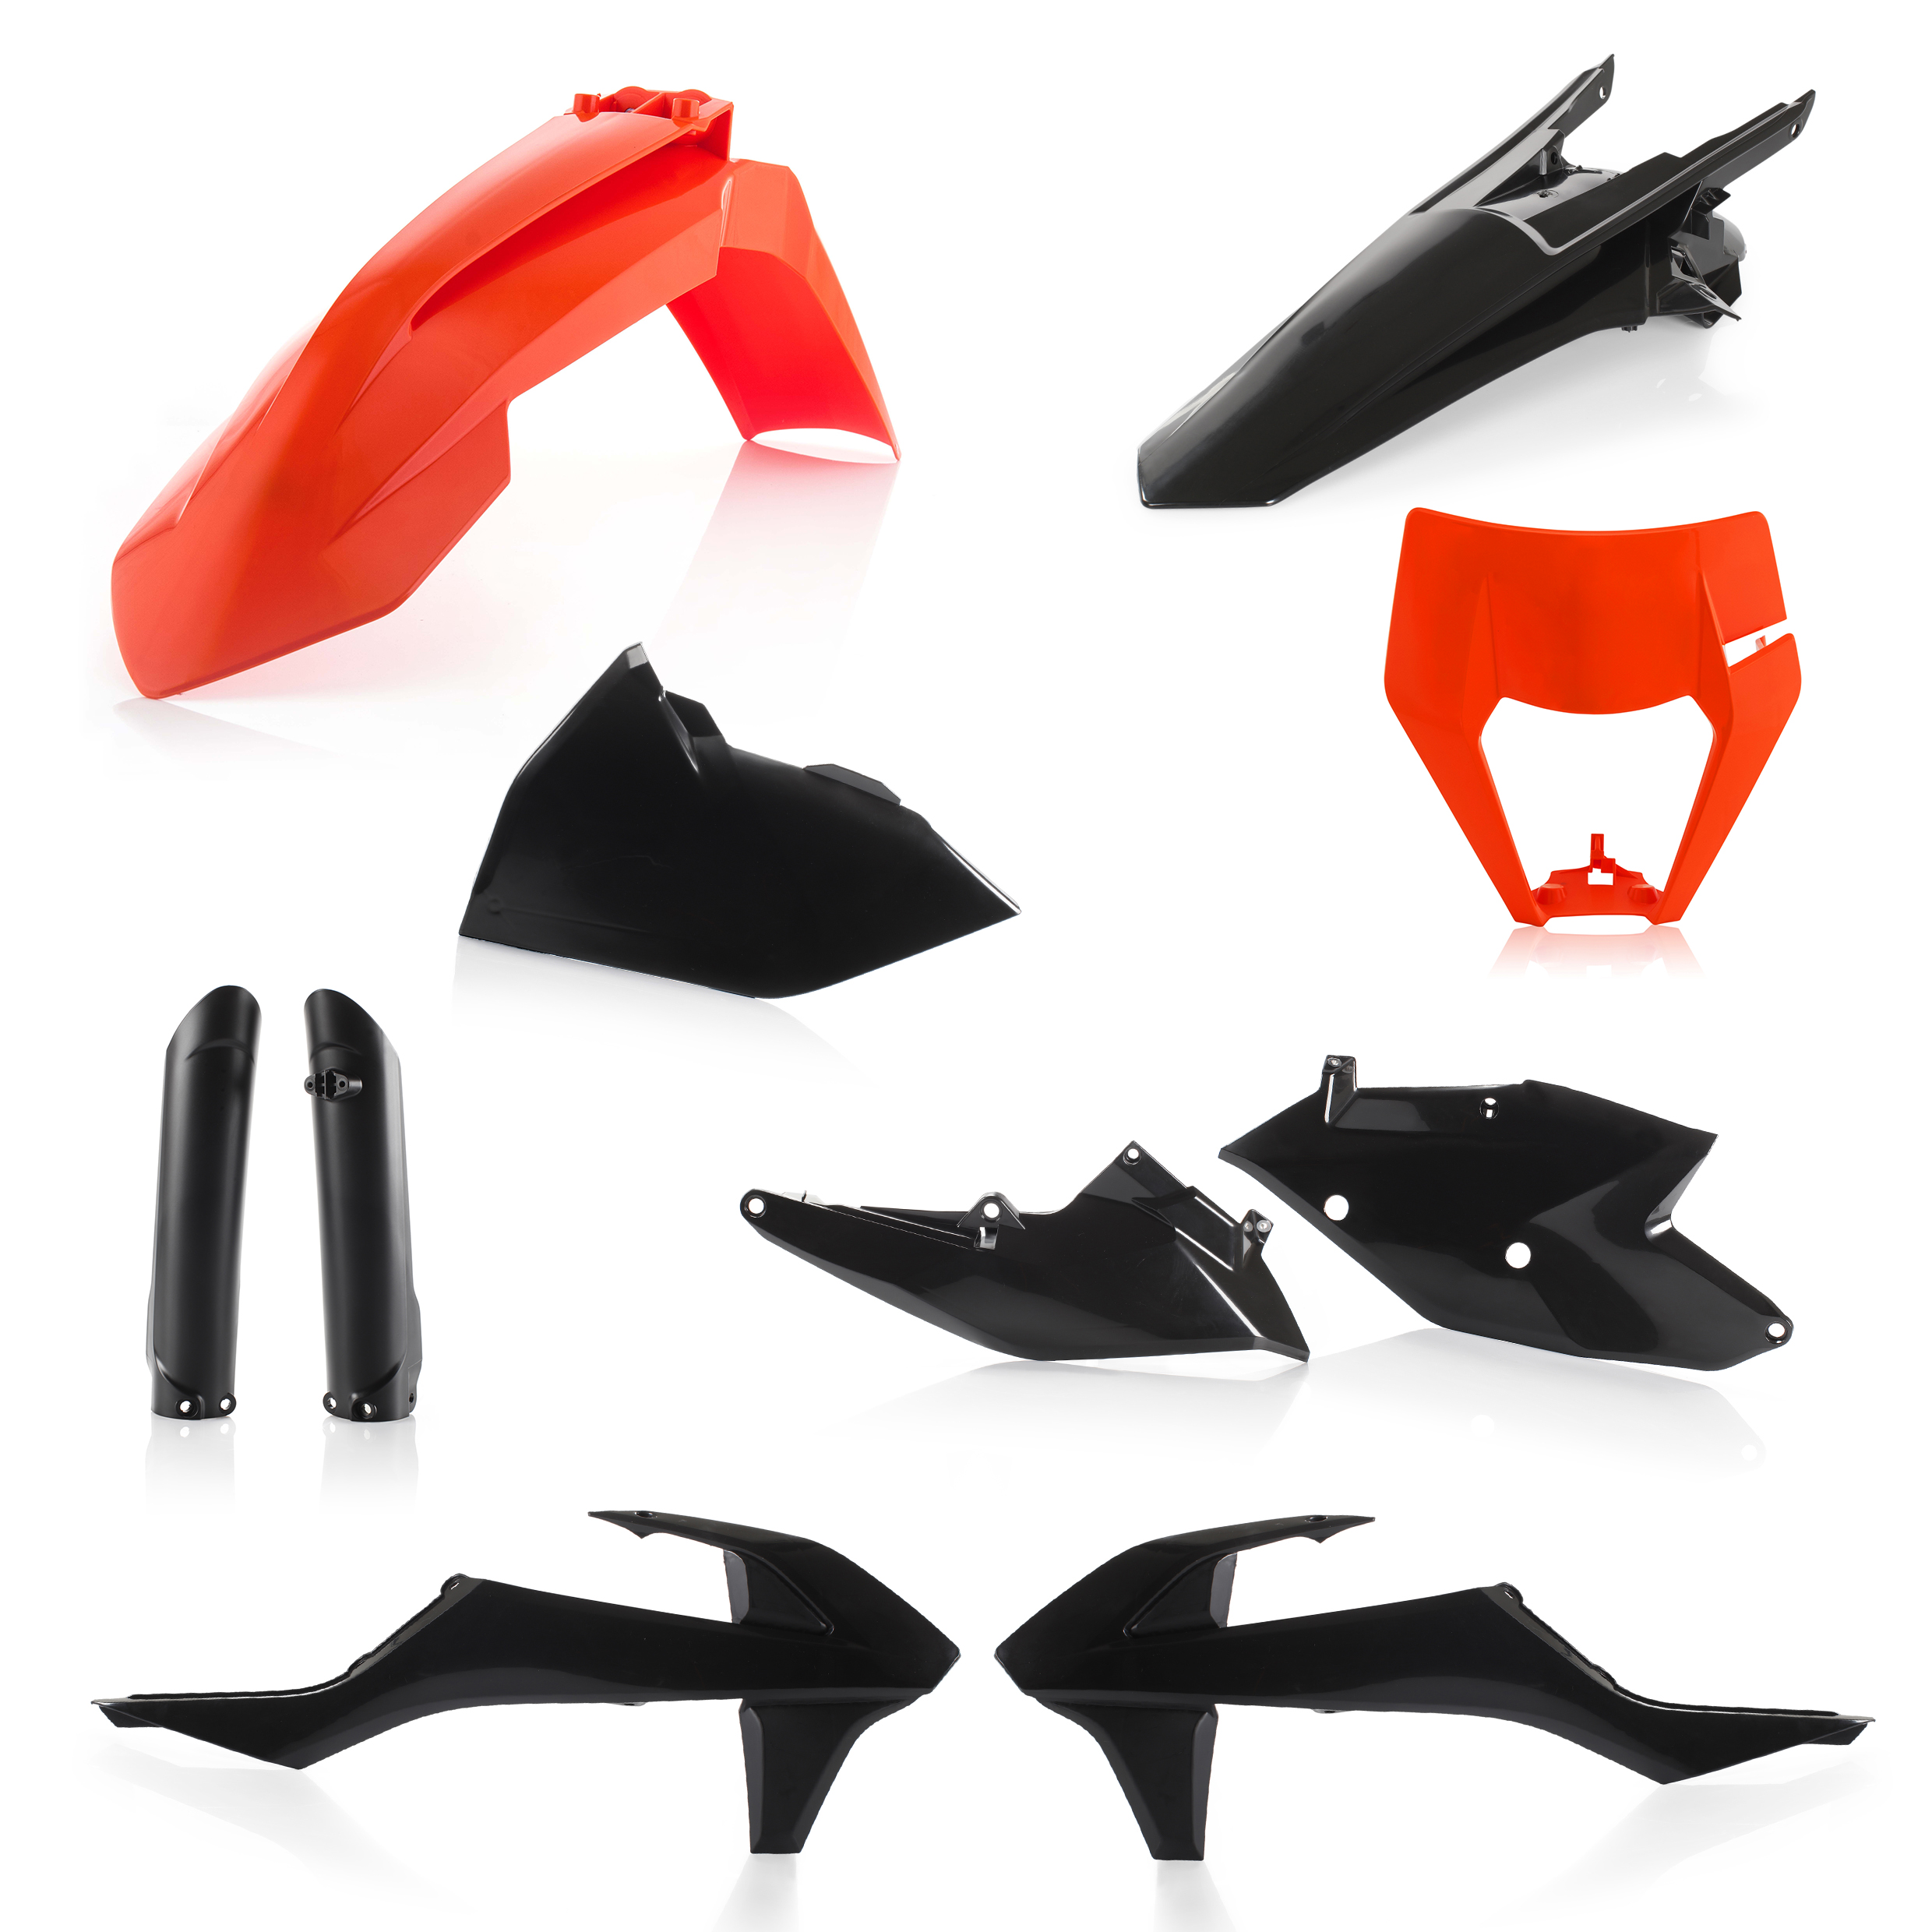 Plastikteile für deine KTM EXC / EXC-F 125-520 in schwarz-orange bestehend aus Kotflügel vorn Kotflügel hinten Kühlerspoiler Seitenteile Gabelschützer Air Box Cover Lampenmaske